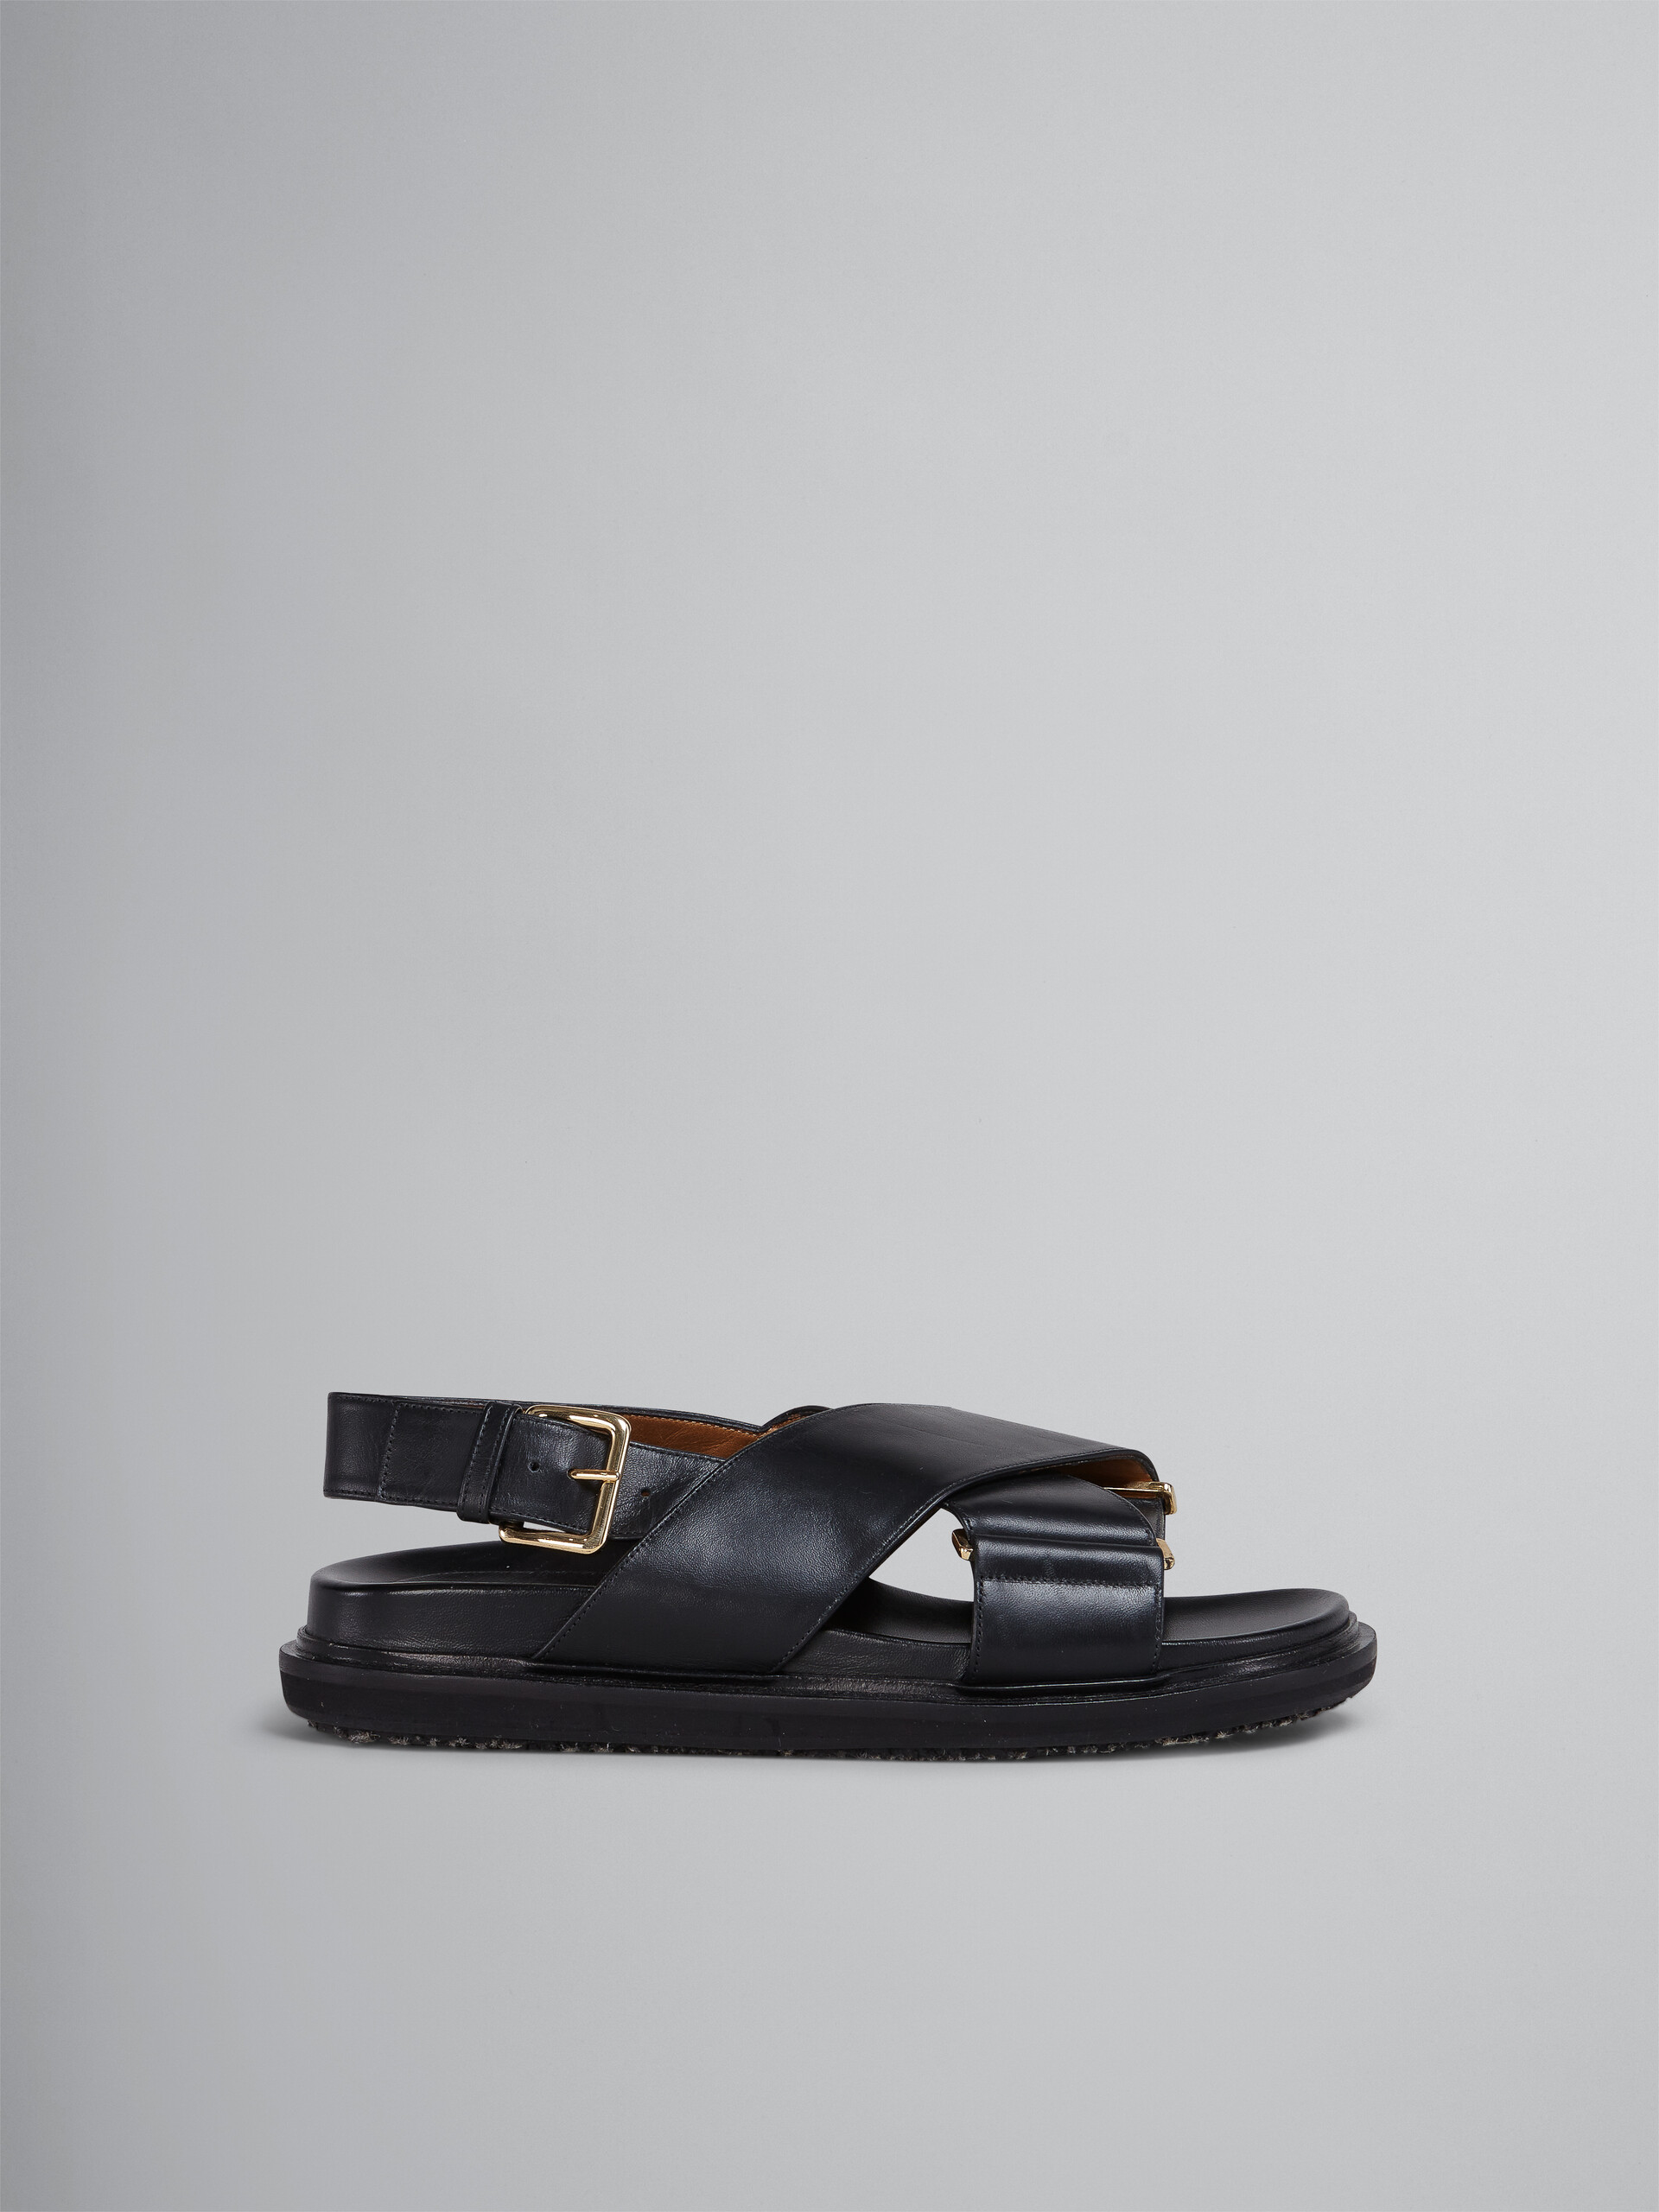 Braune Ledersandalen mit überkreuzten Riemchen - Sandalen - Image 1